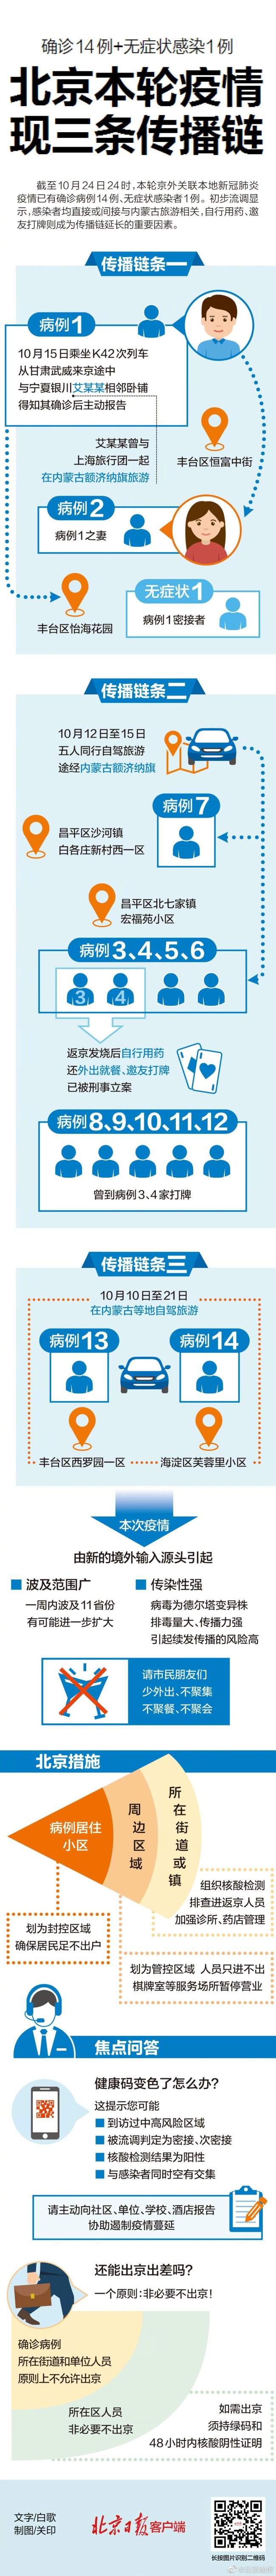 北京已有14例確診1例無症狀 本輪疫情現三條傳播鏈